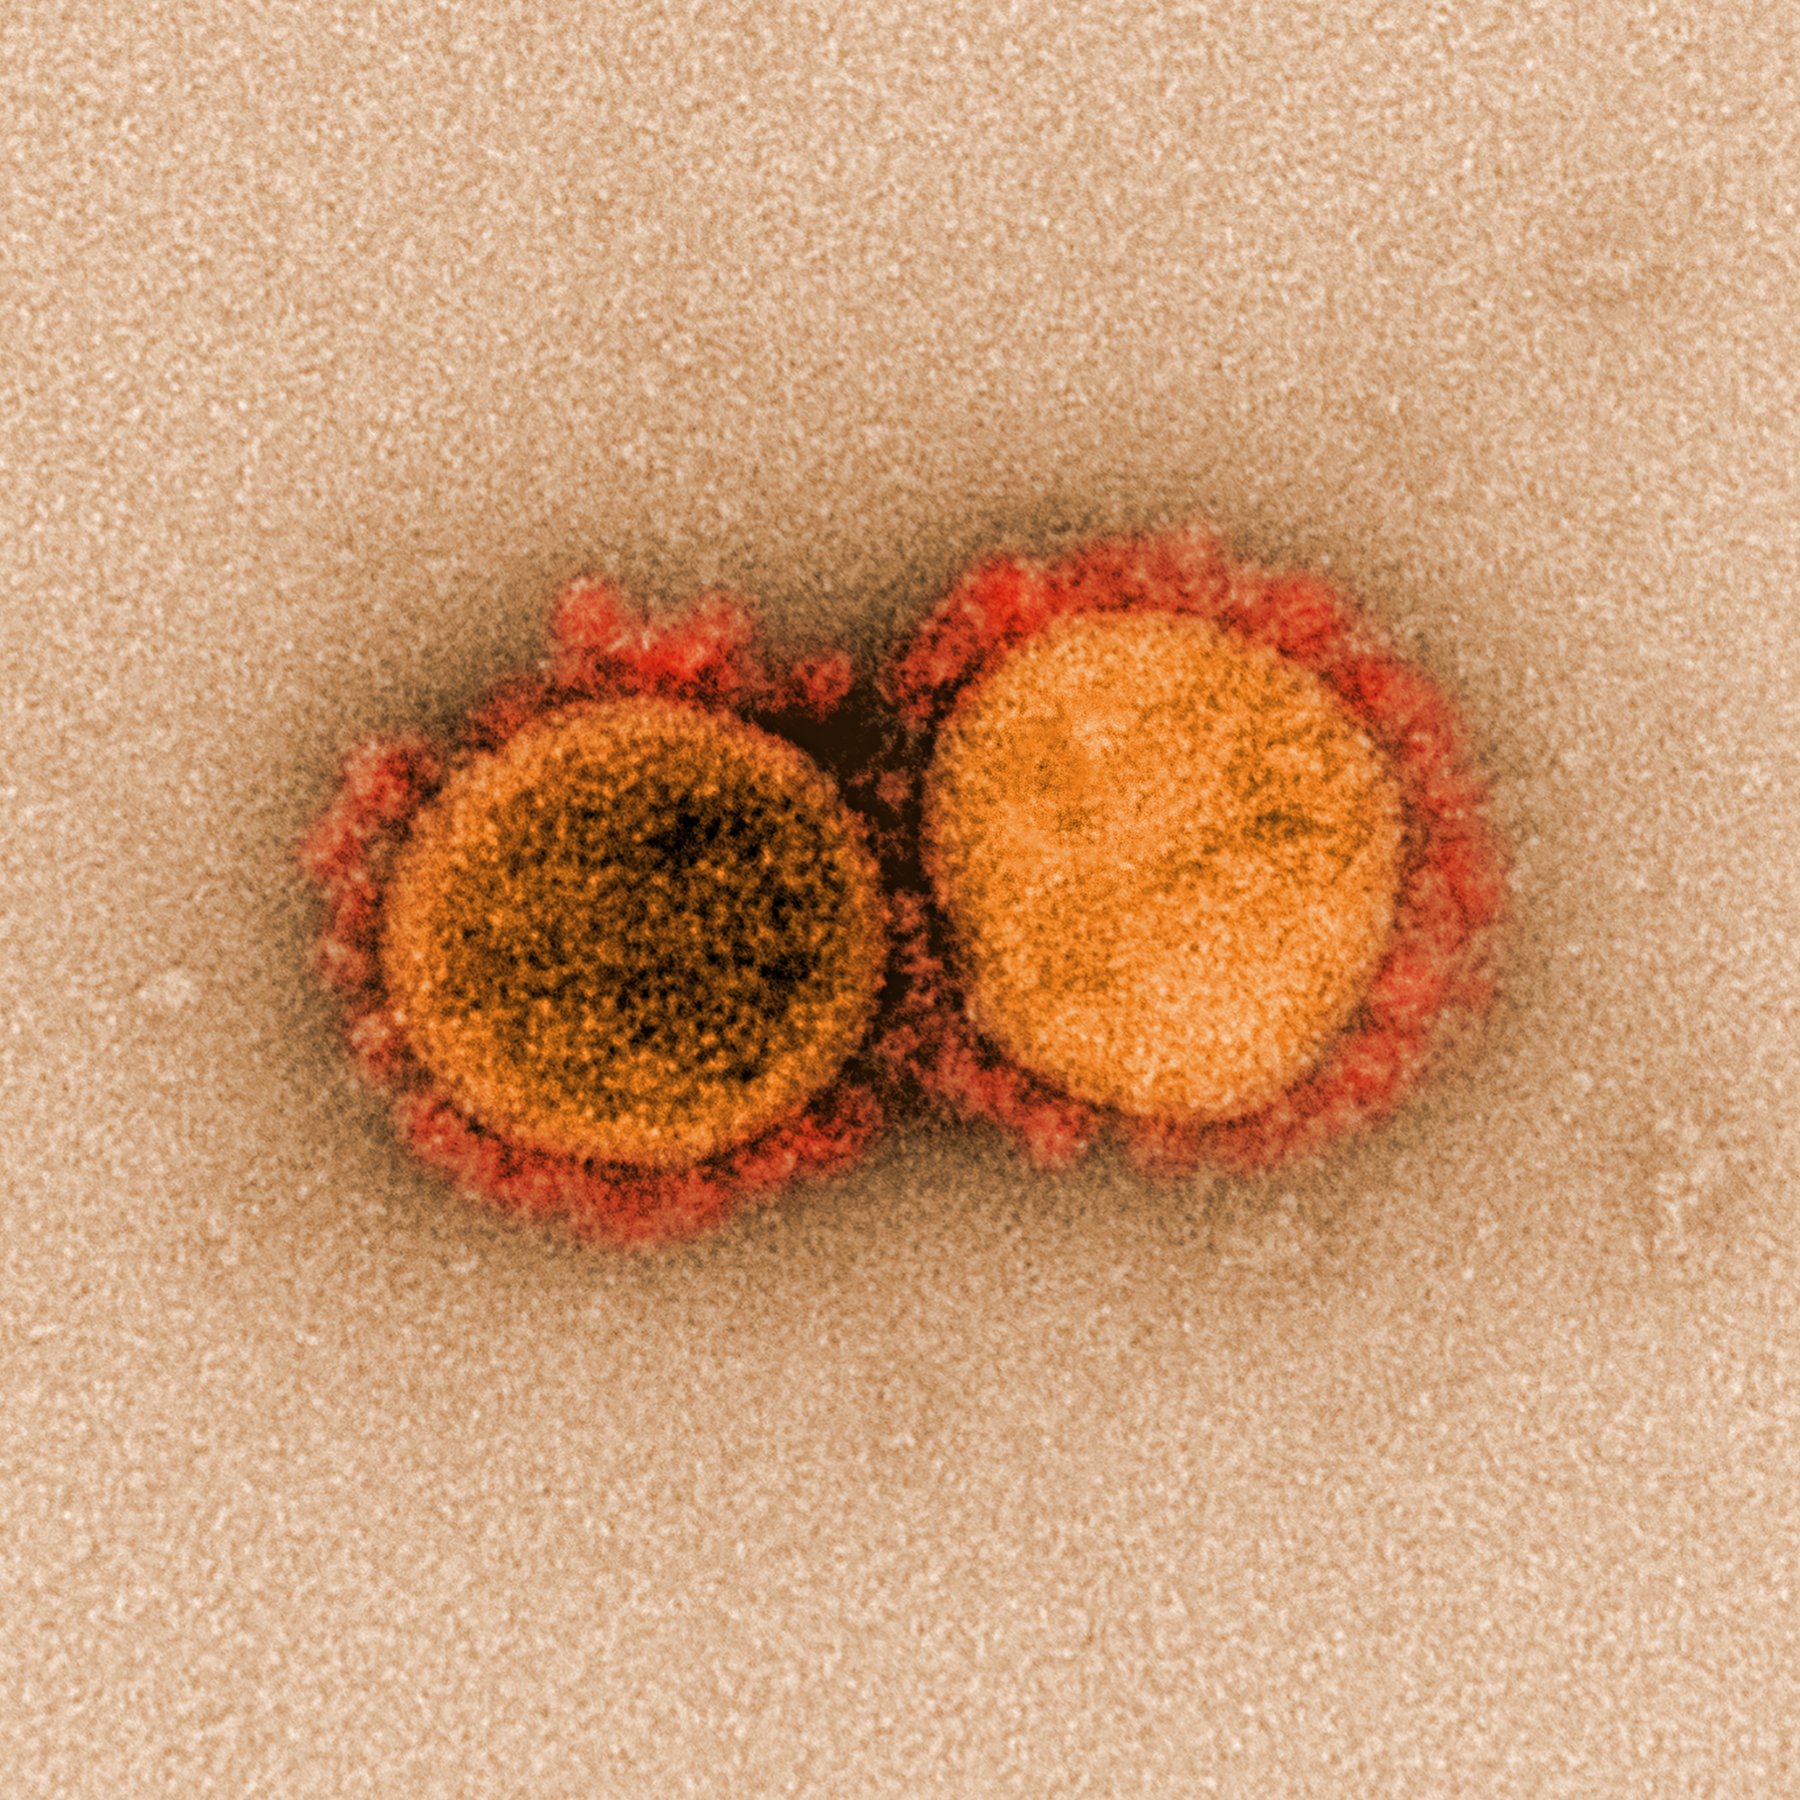 Variante delta plus del coronavirus: todo lo que se sabe hasta ahora